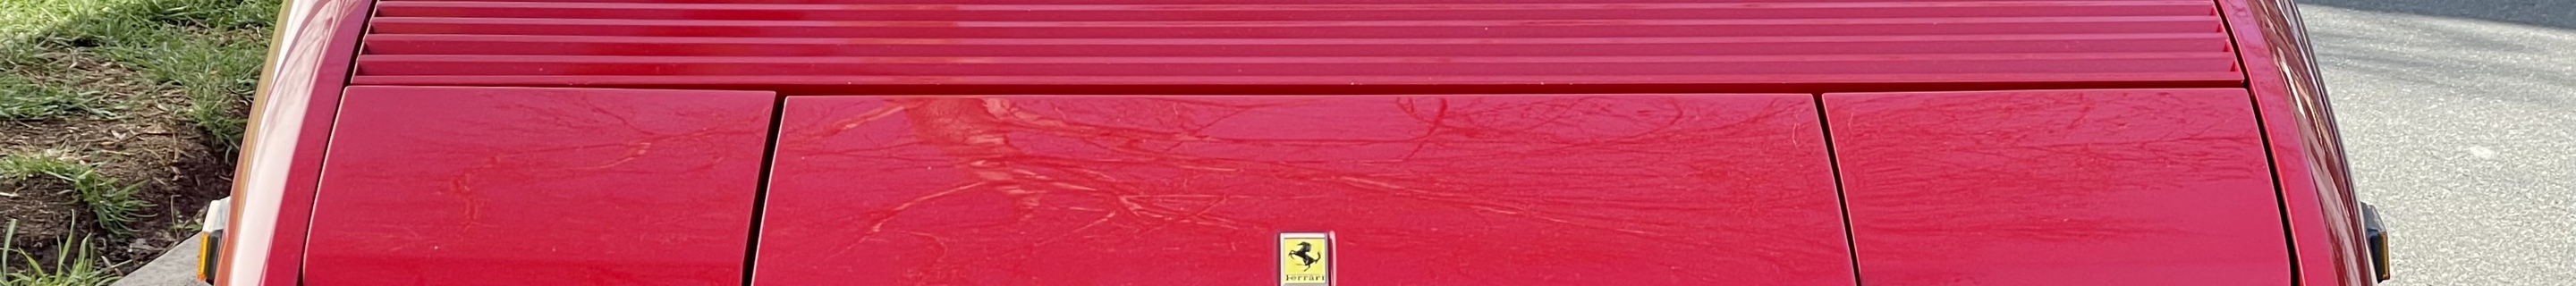 Ferrari Mondial T Cabriolet